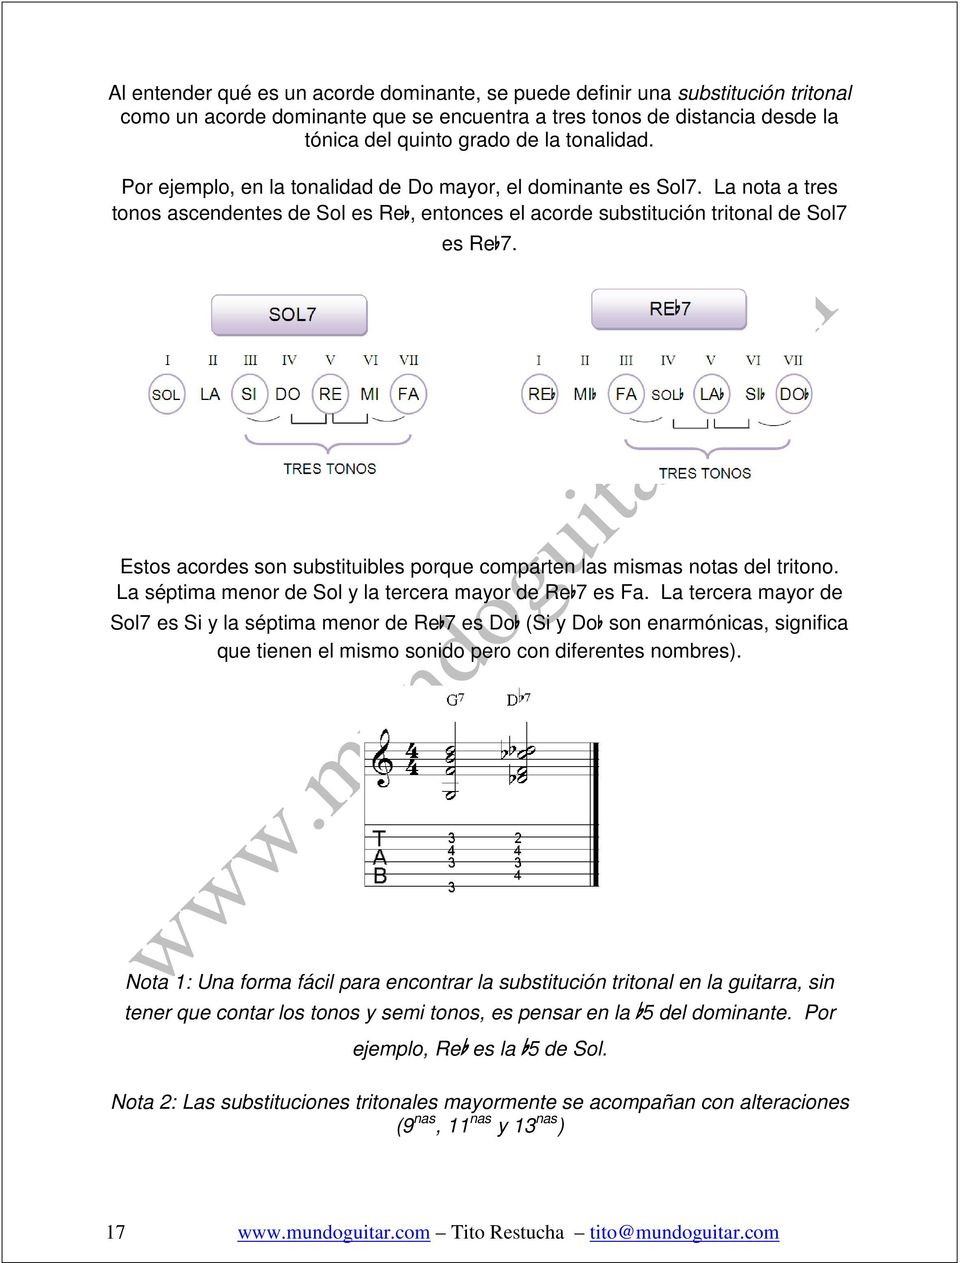 Estos acordes son substituibles porque comparten las mismas notas del tritono. La séptima menor de Sol y la tercera mayor de Reb7 es Fa.